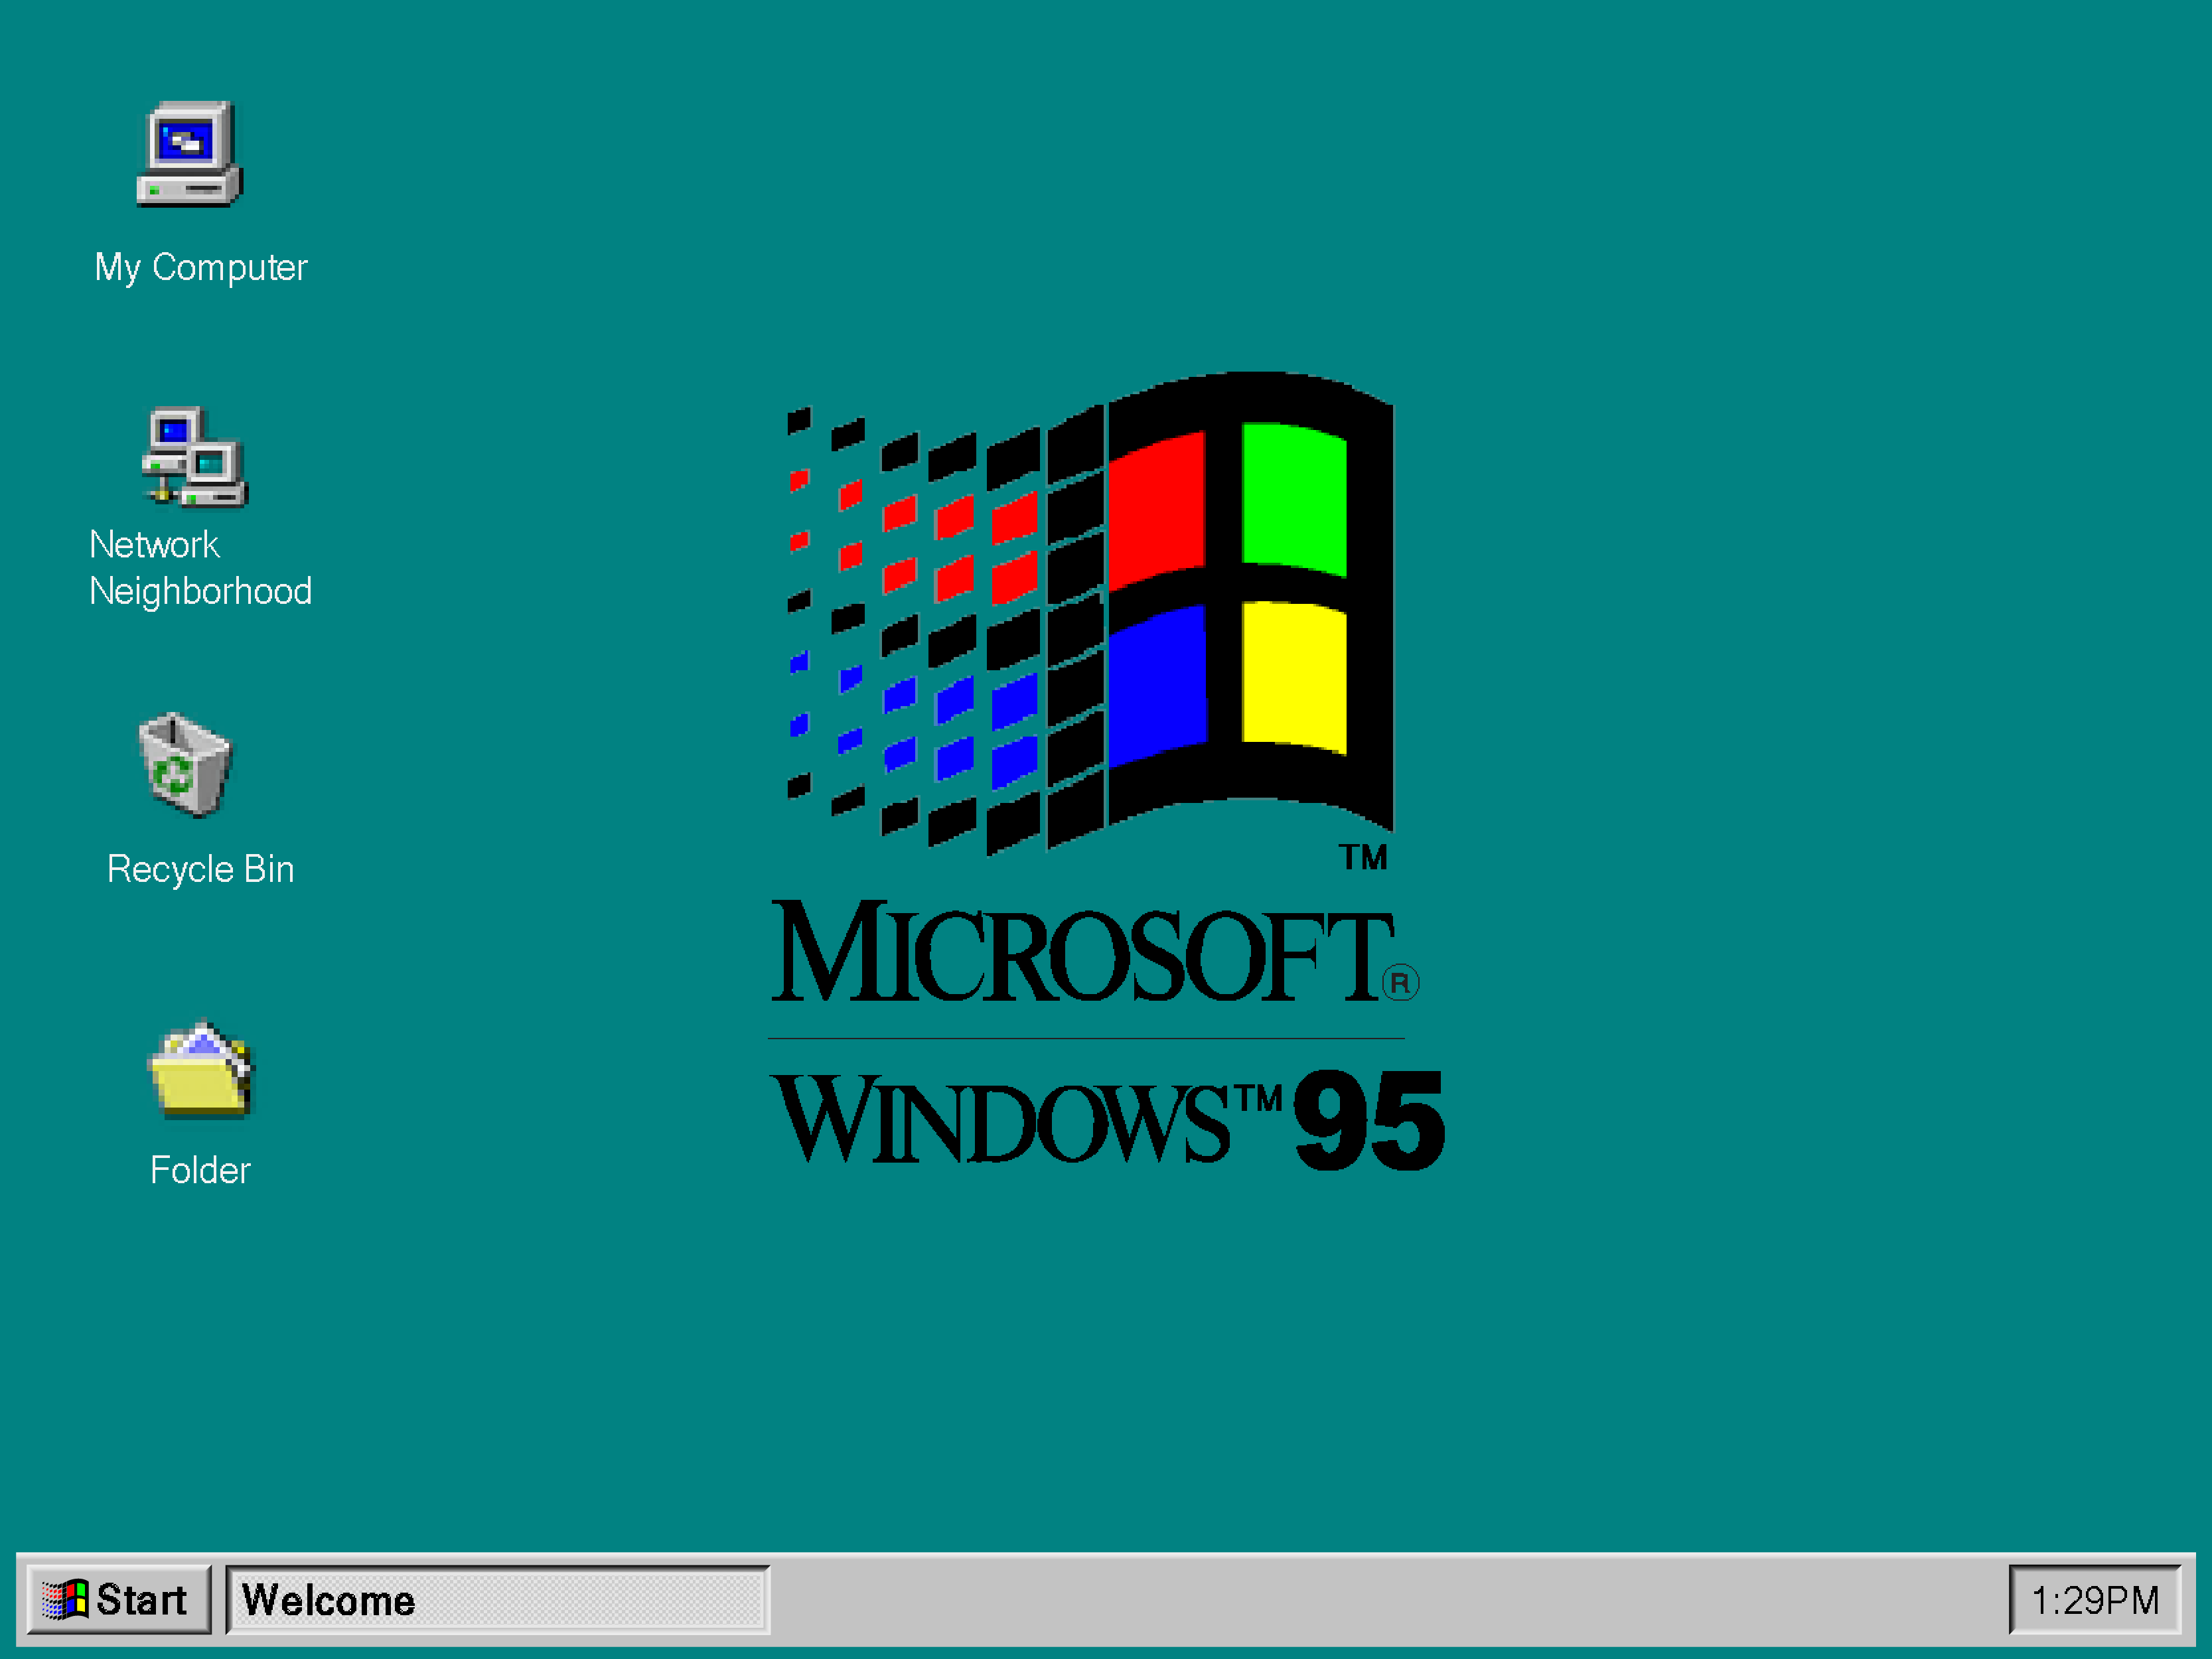 Появления windows. Операционная система Windows 95. Windows 95 операционные системы Microsoft. Экран Windows 95. Графический Интерфейс Windows 95.